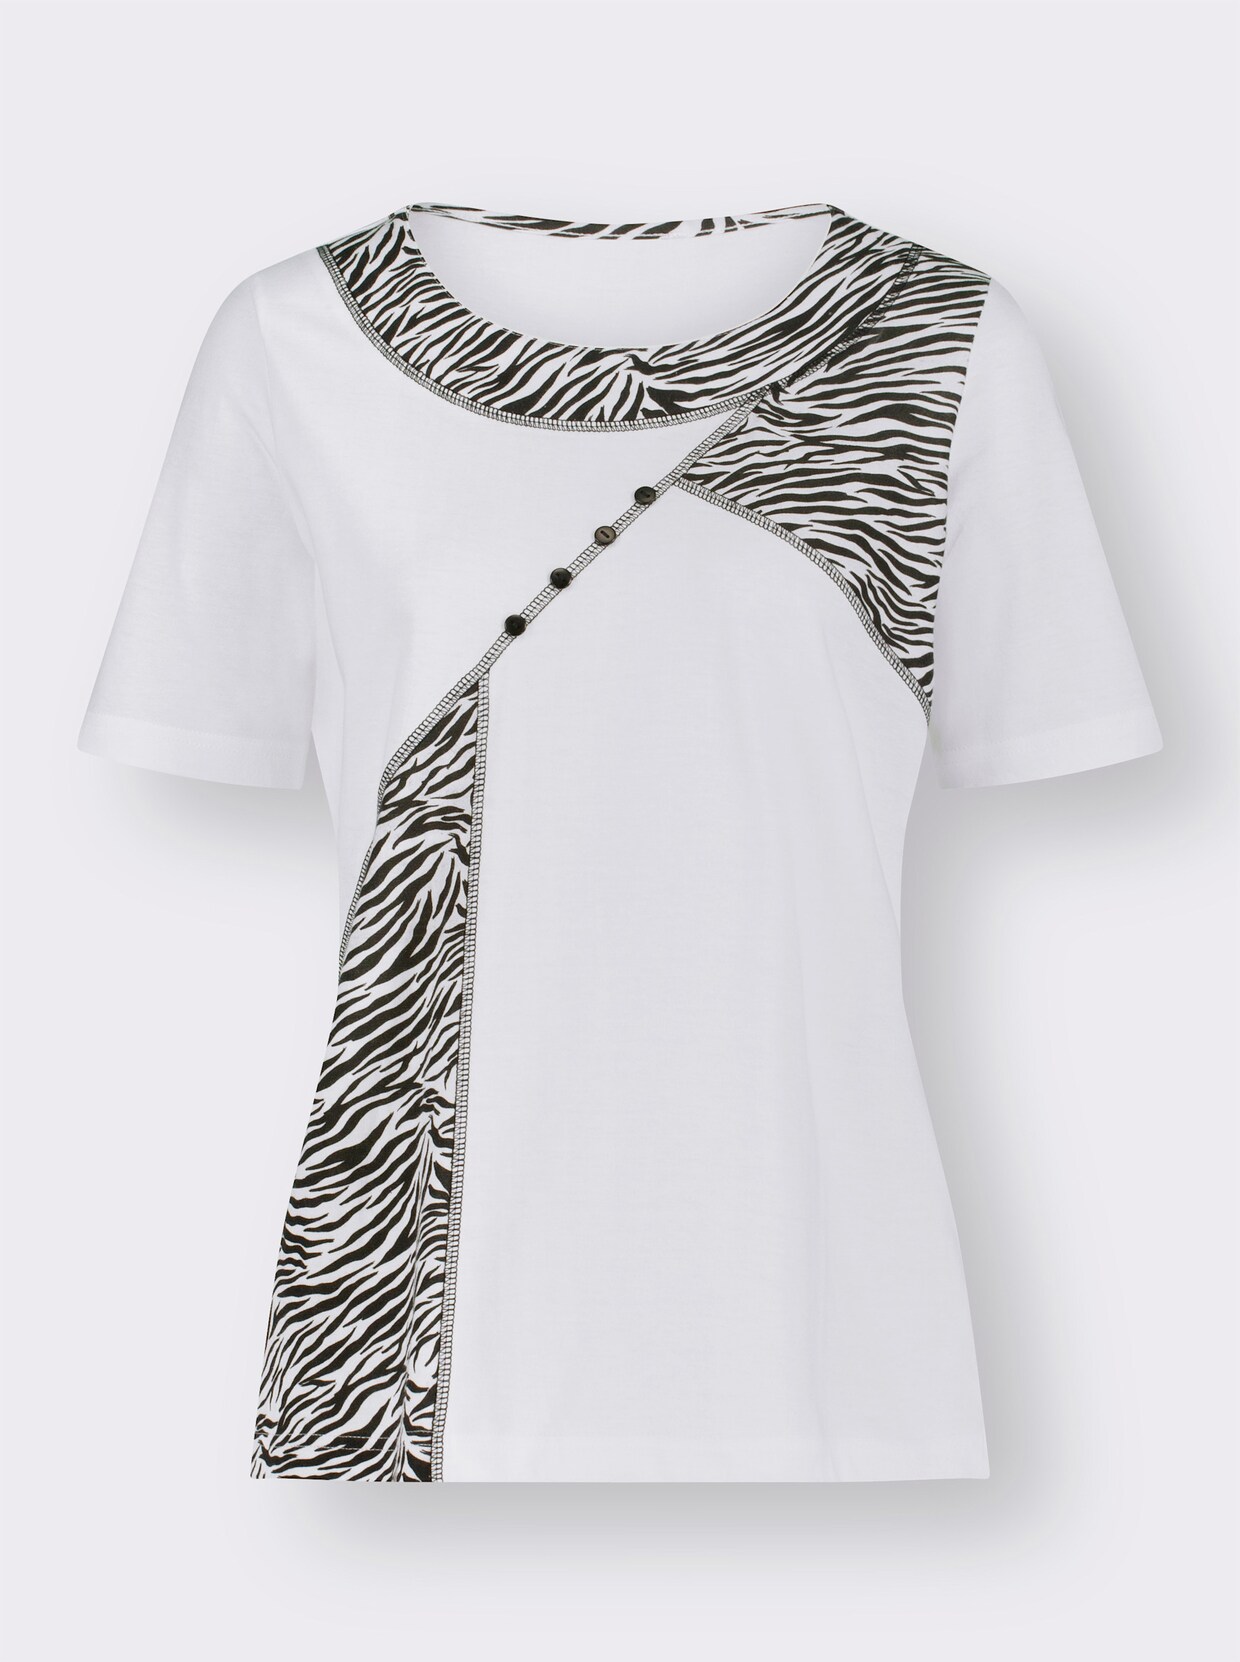 Tričko s krátkým rukávem - bílá-černá-vzor